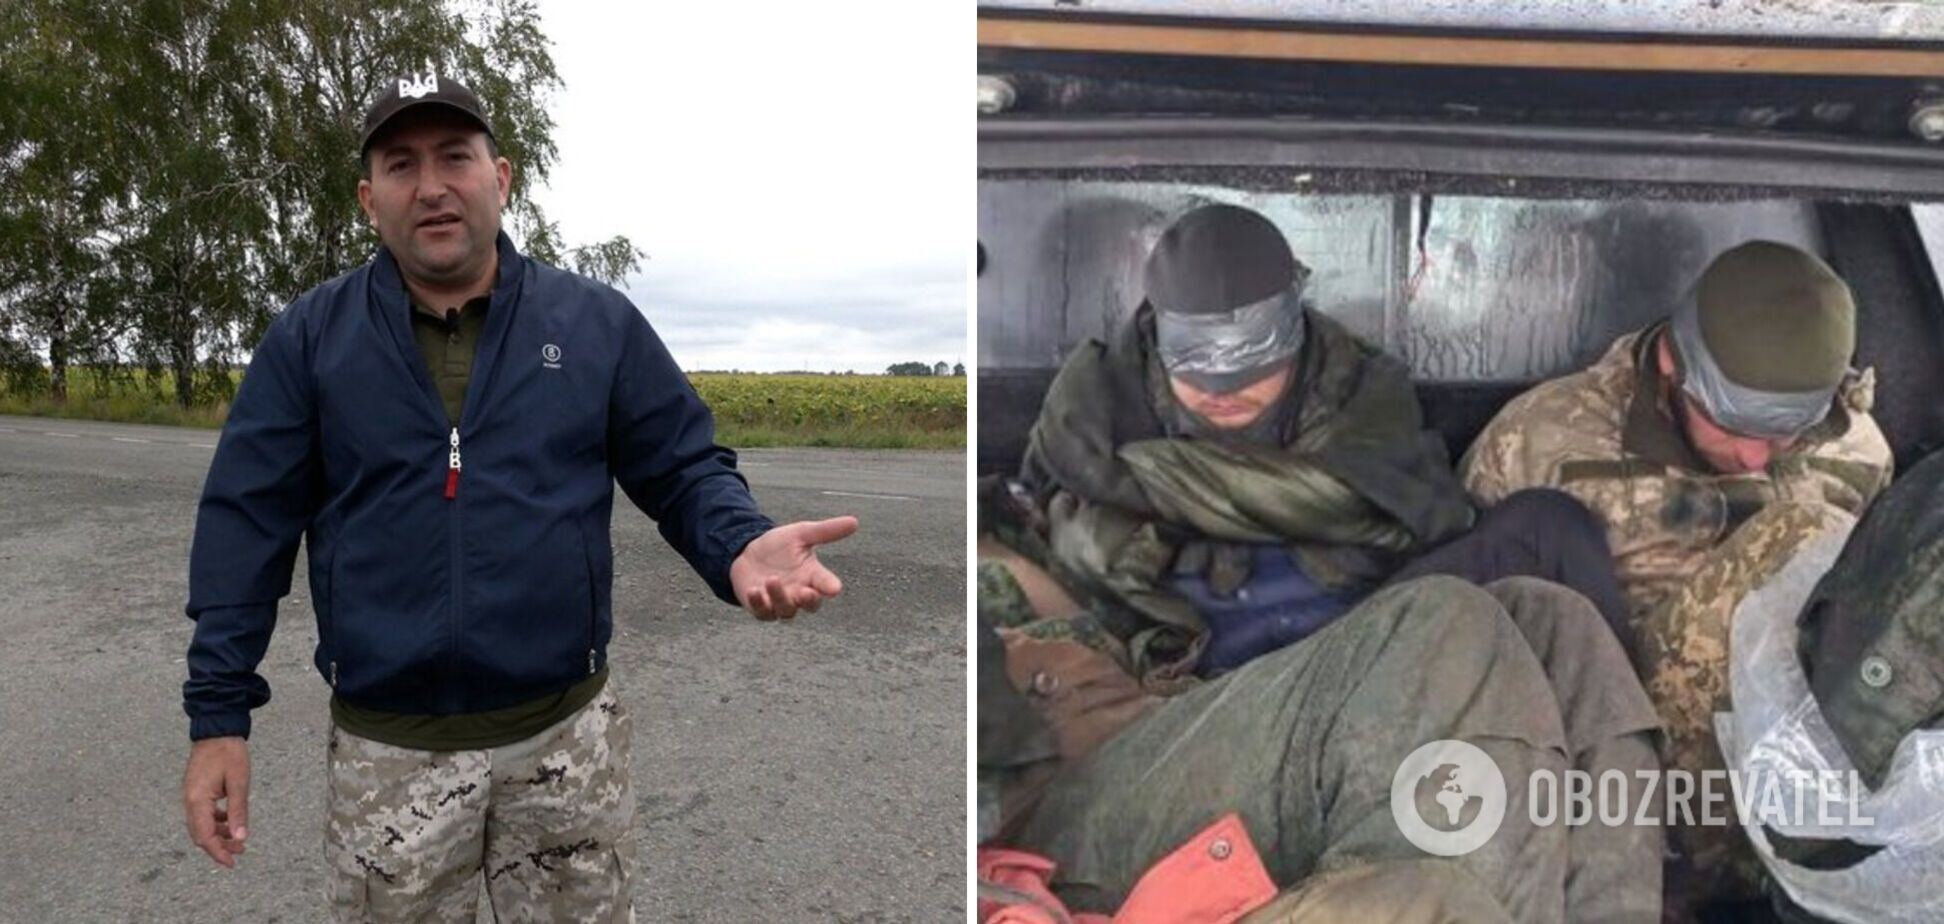 Здалися в полон за два бутерброди: захисник України розповів про 'угоду' з окупантами. Відео